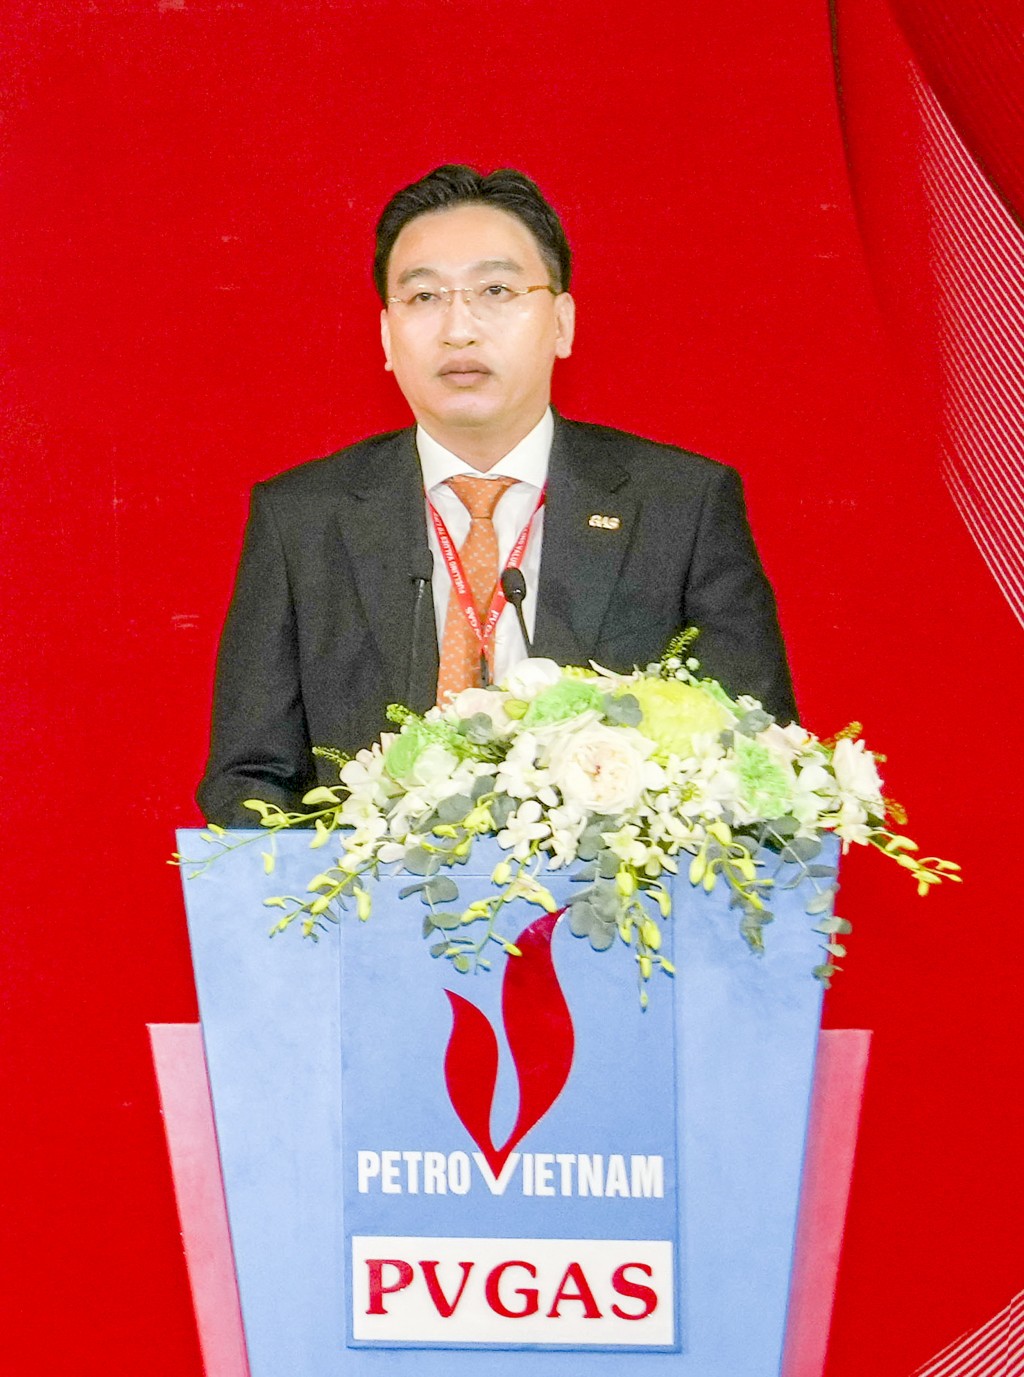 Đồng chí Nguyễn Thanh Bình – Bí thư Đảng ủy, Chủ tịch HĐQT PV GAS thể hiện quyết tâm khẩn trương tập trung vào công tác lãnh đạo, chỉ đạo sâu sát, quyết liệt và có hiệu quả các mặt hoạt động của PV GAS